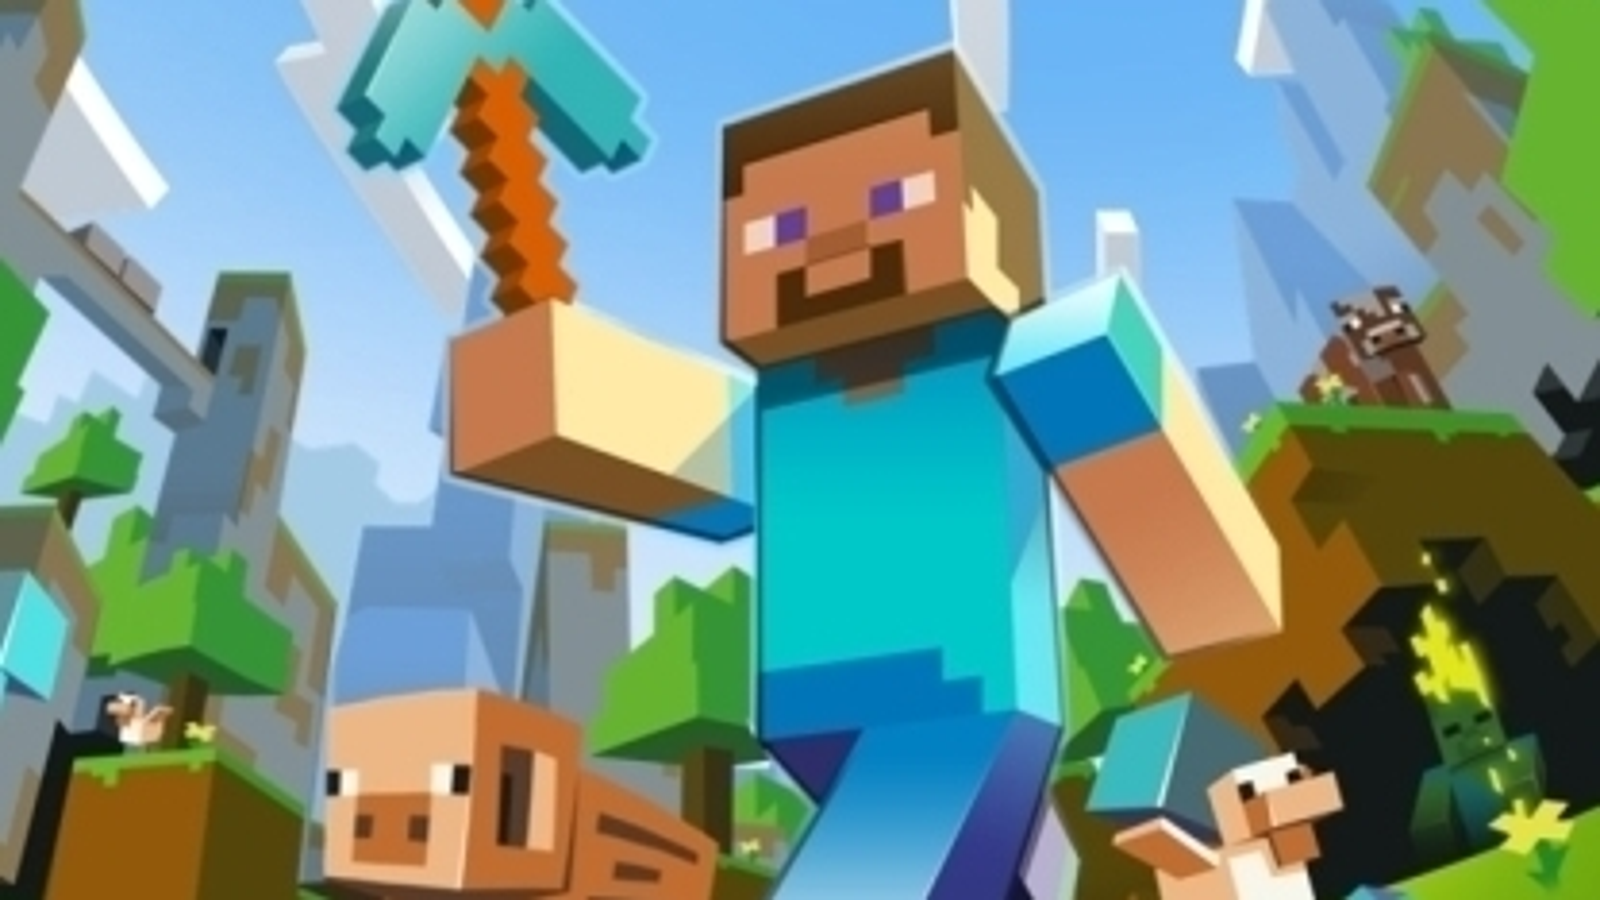 Minecraft in Minecraft Video Games 